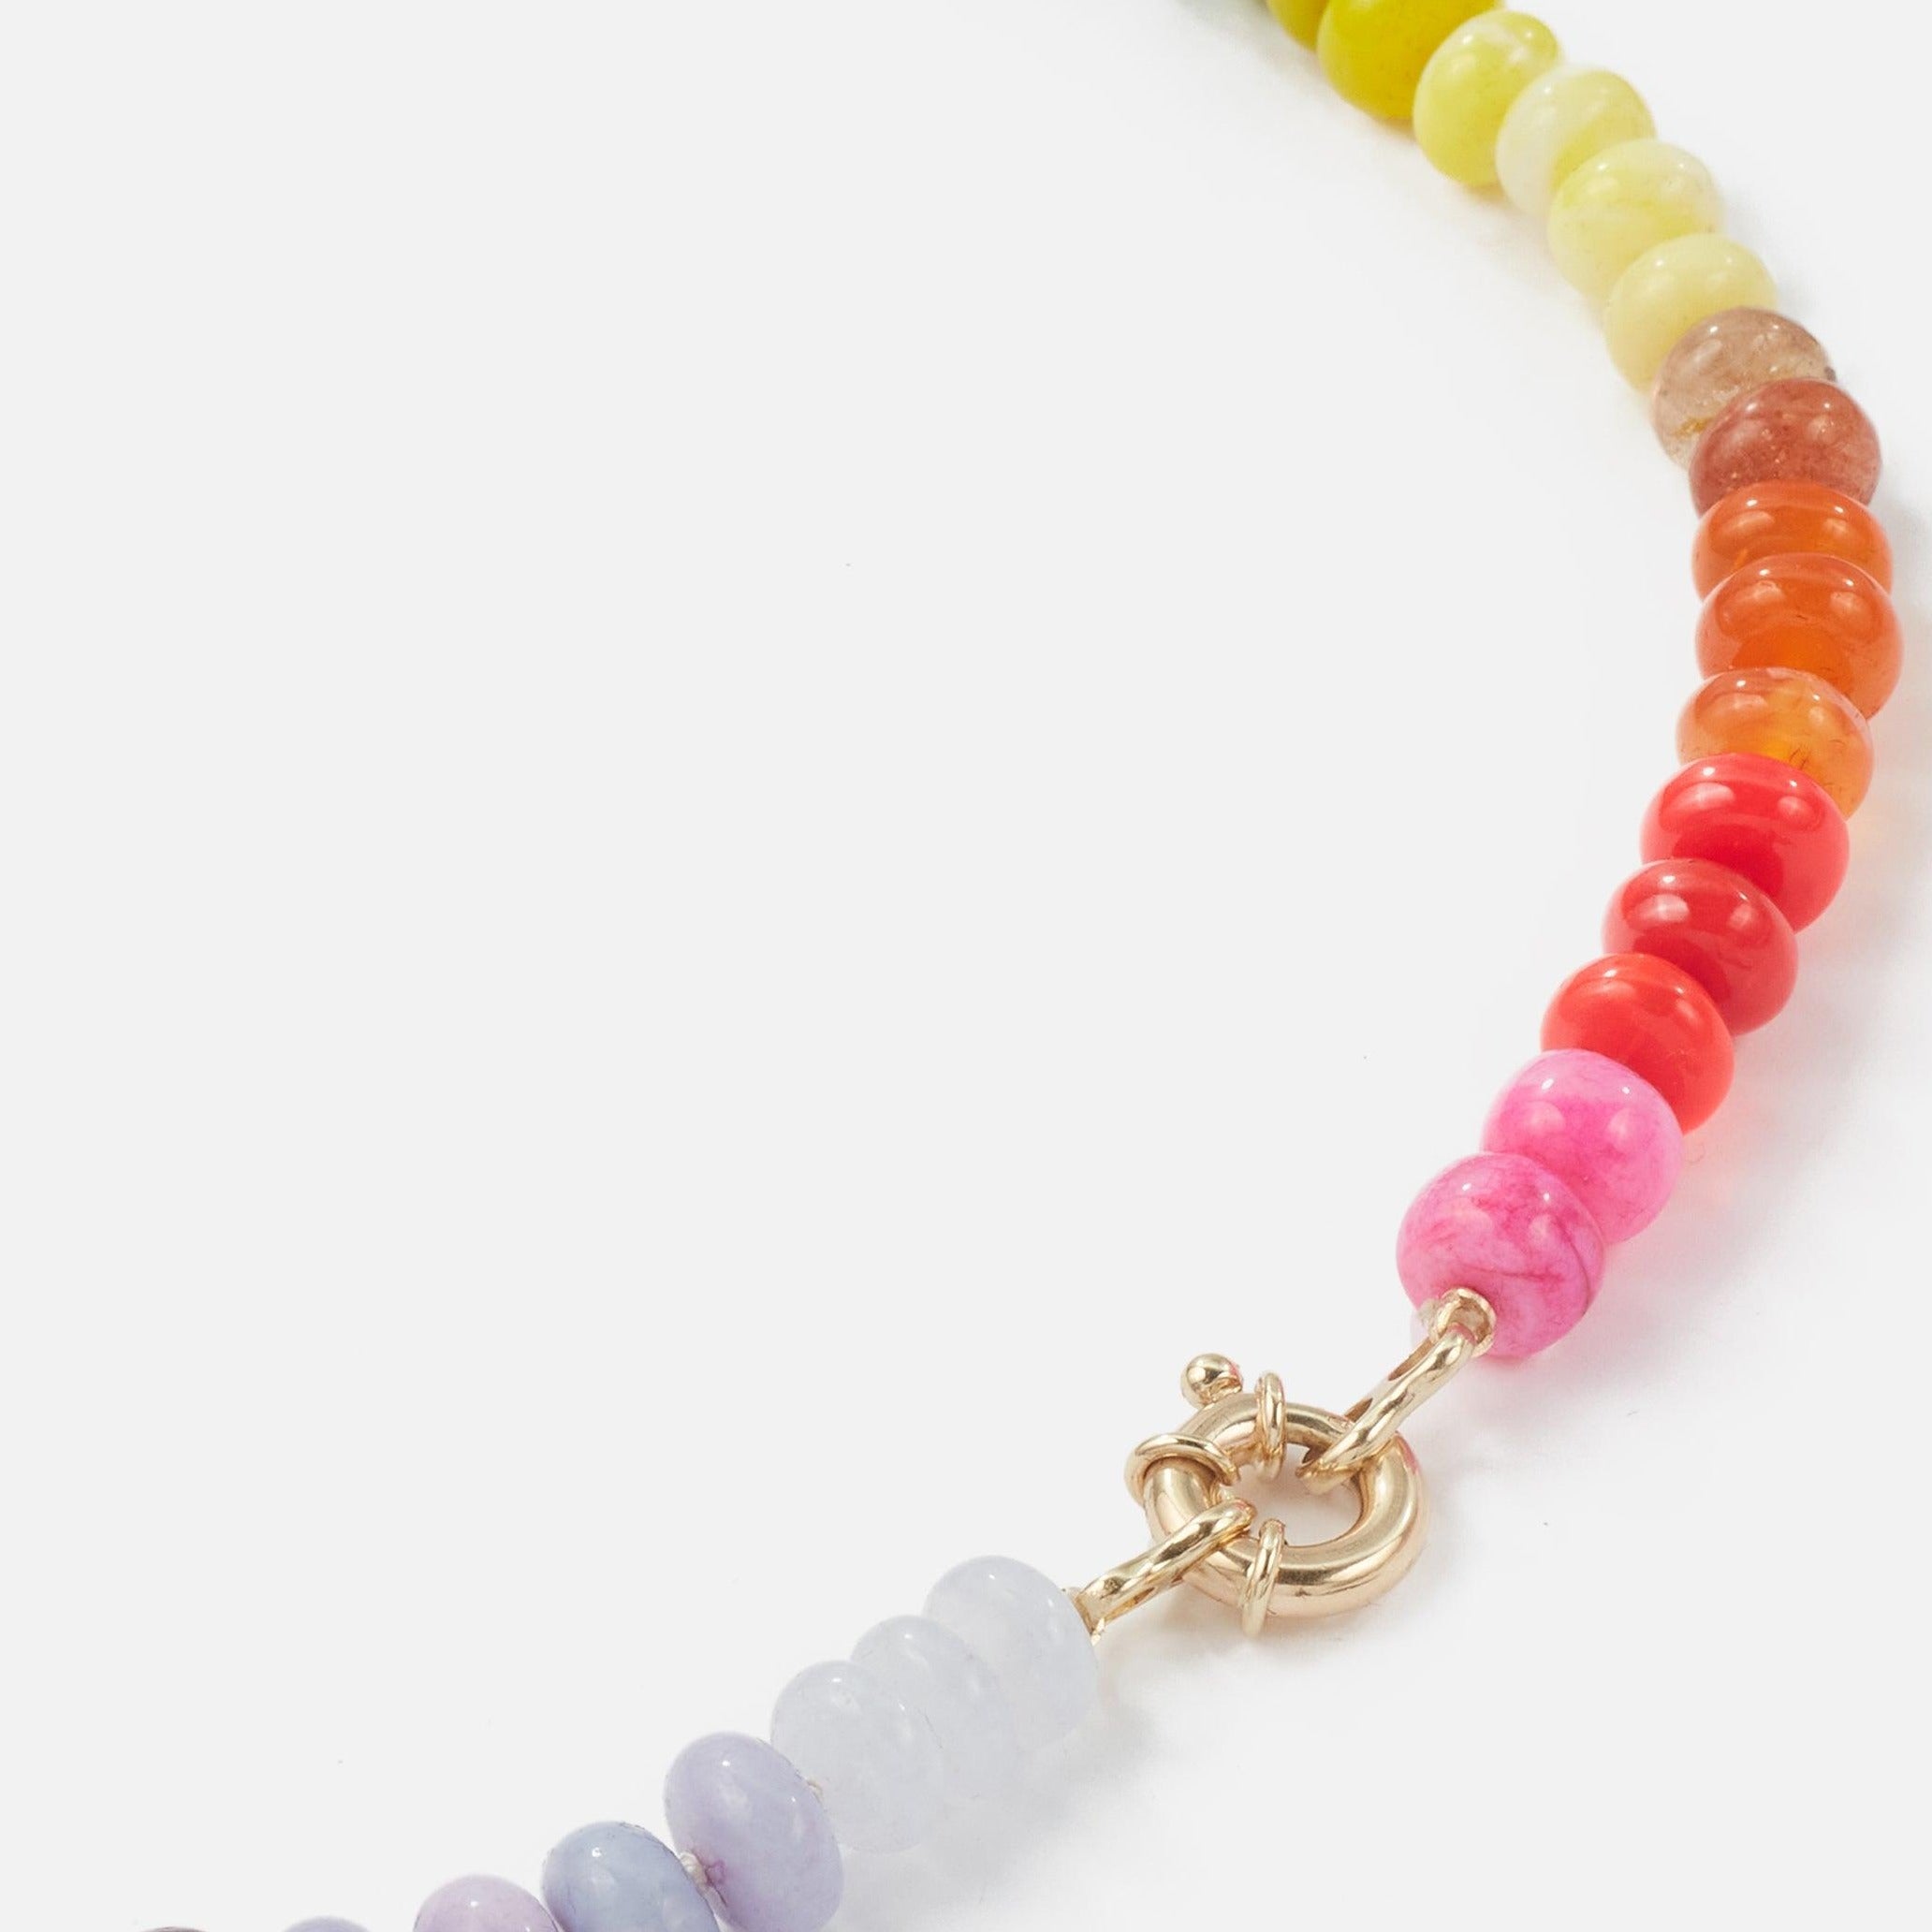 Encirkled Jewelry Neon Rainbow Gemstone Necklace 3